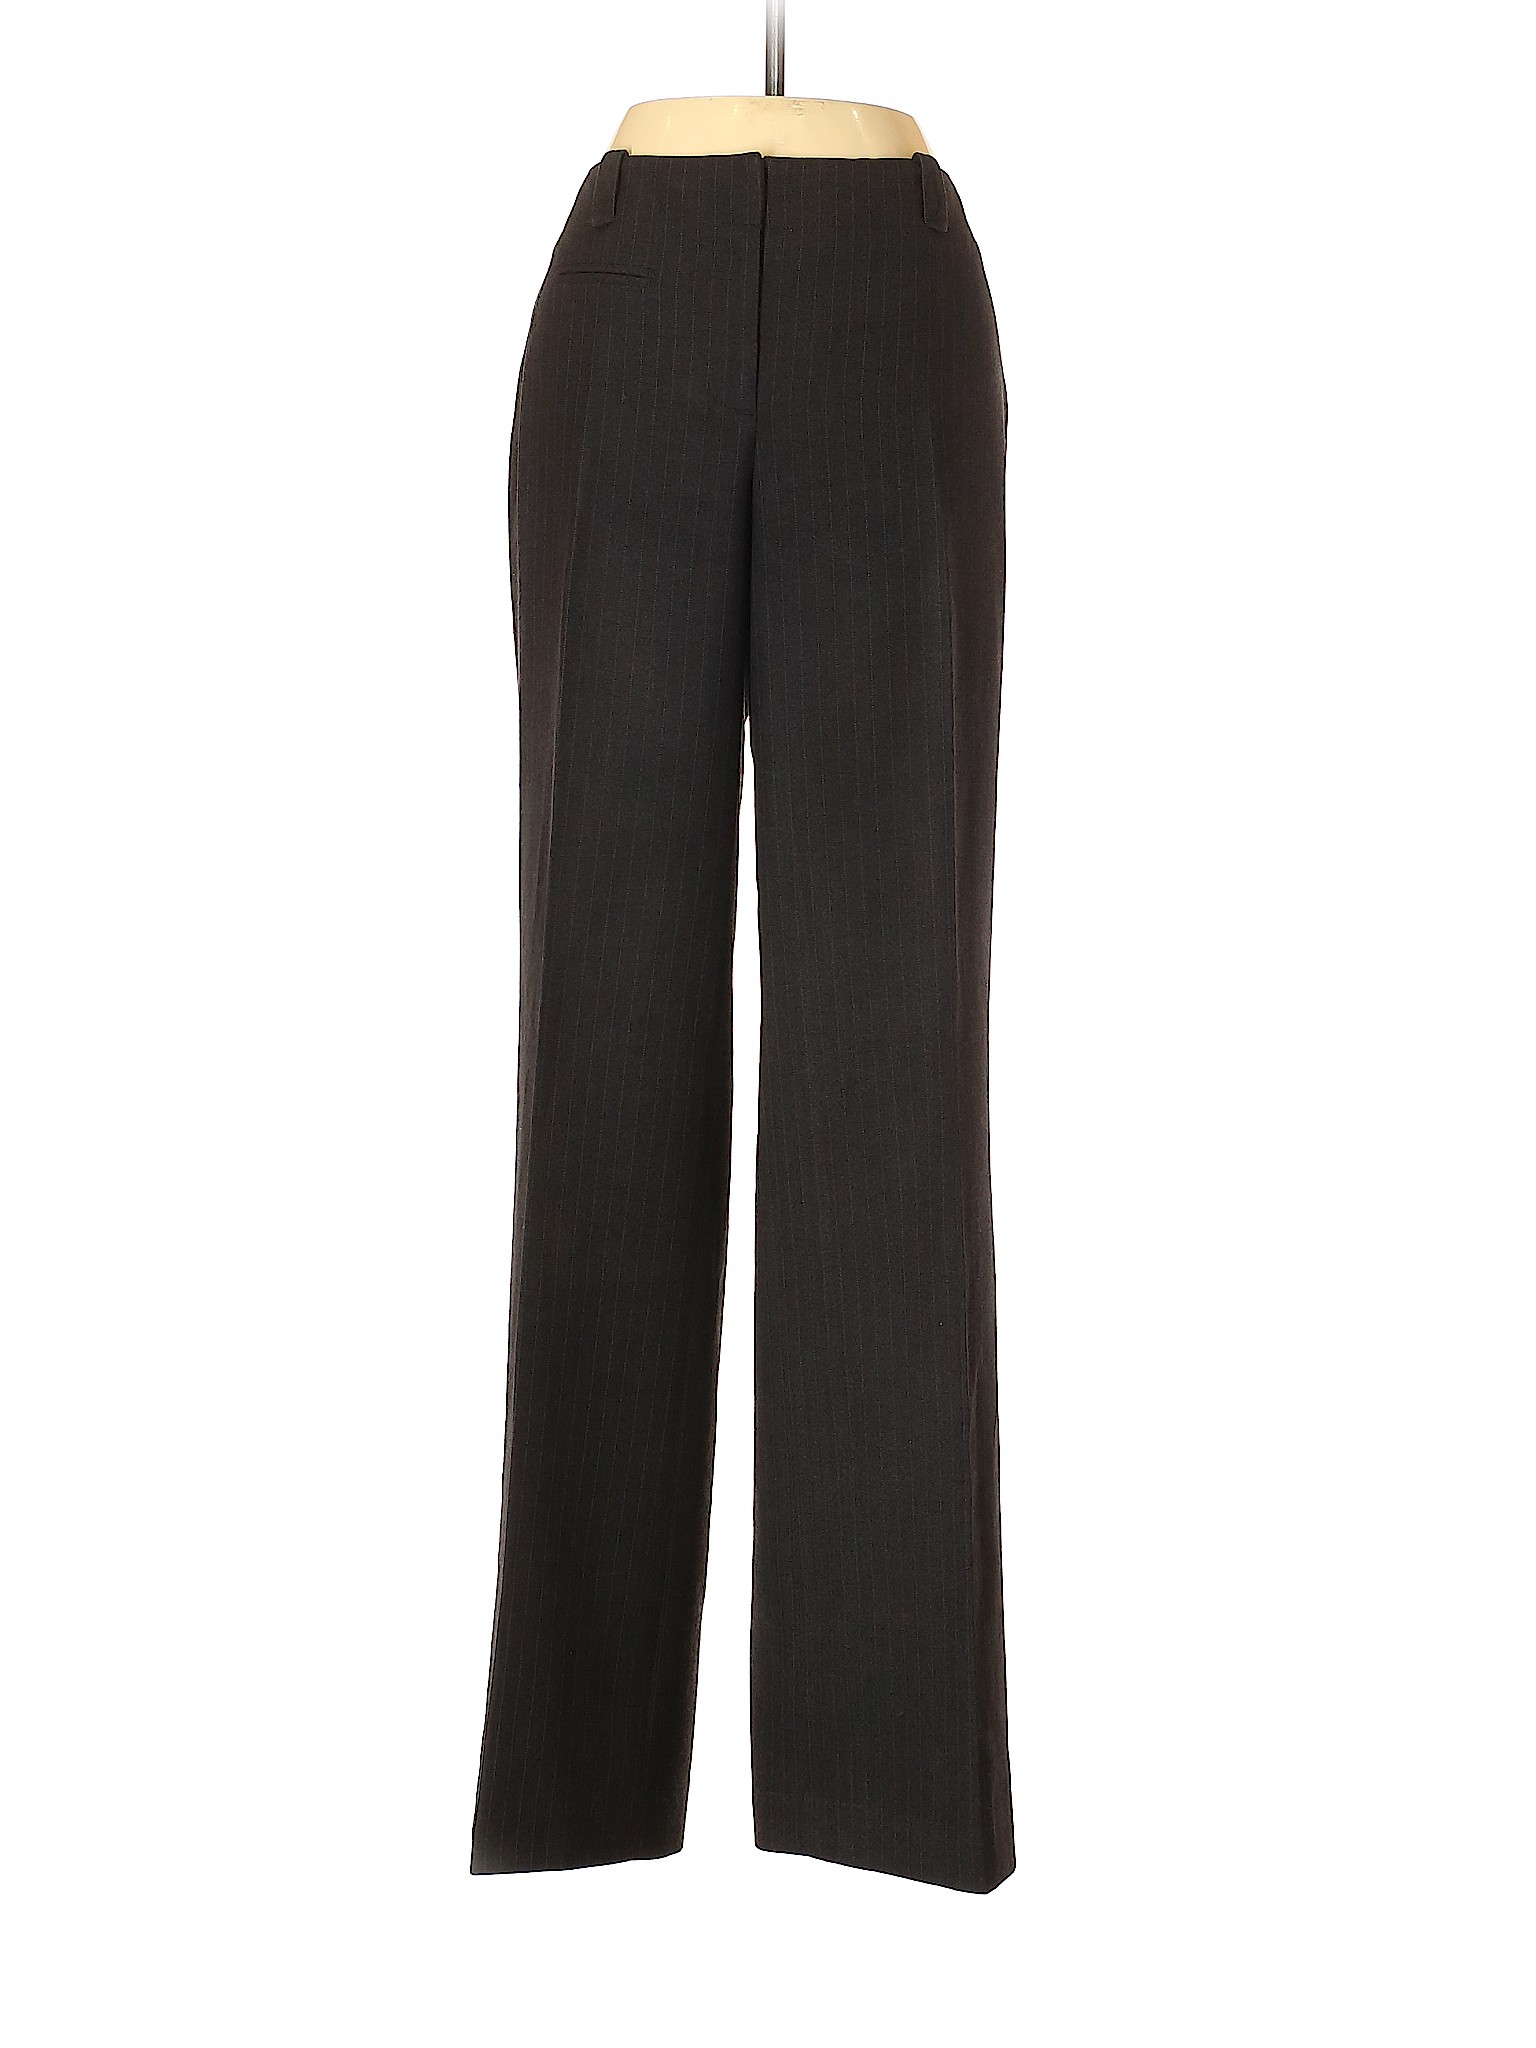 Ann Taylor Factory Women Black Dress Pants 4 | eBay